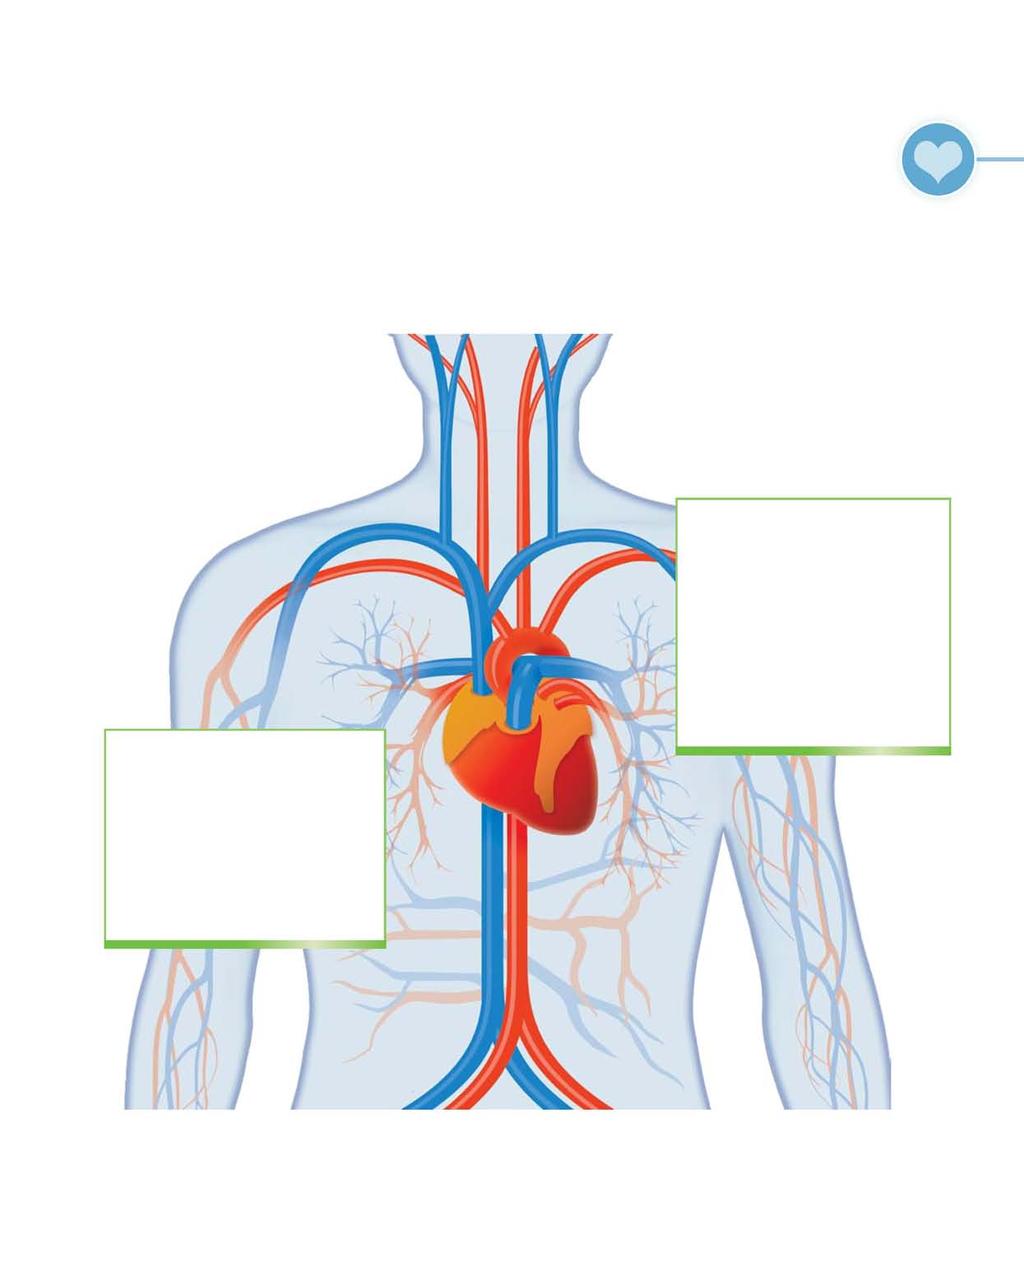 Voedingssupplementen en speciale producten 37 Het cardiovasculair systeem Wie zijn cardiovasculair systeem daadkrachtig wil ondersteunen, kan dit aan de hand van eenvoudige werkzame middelen.